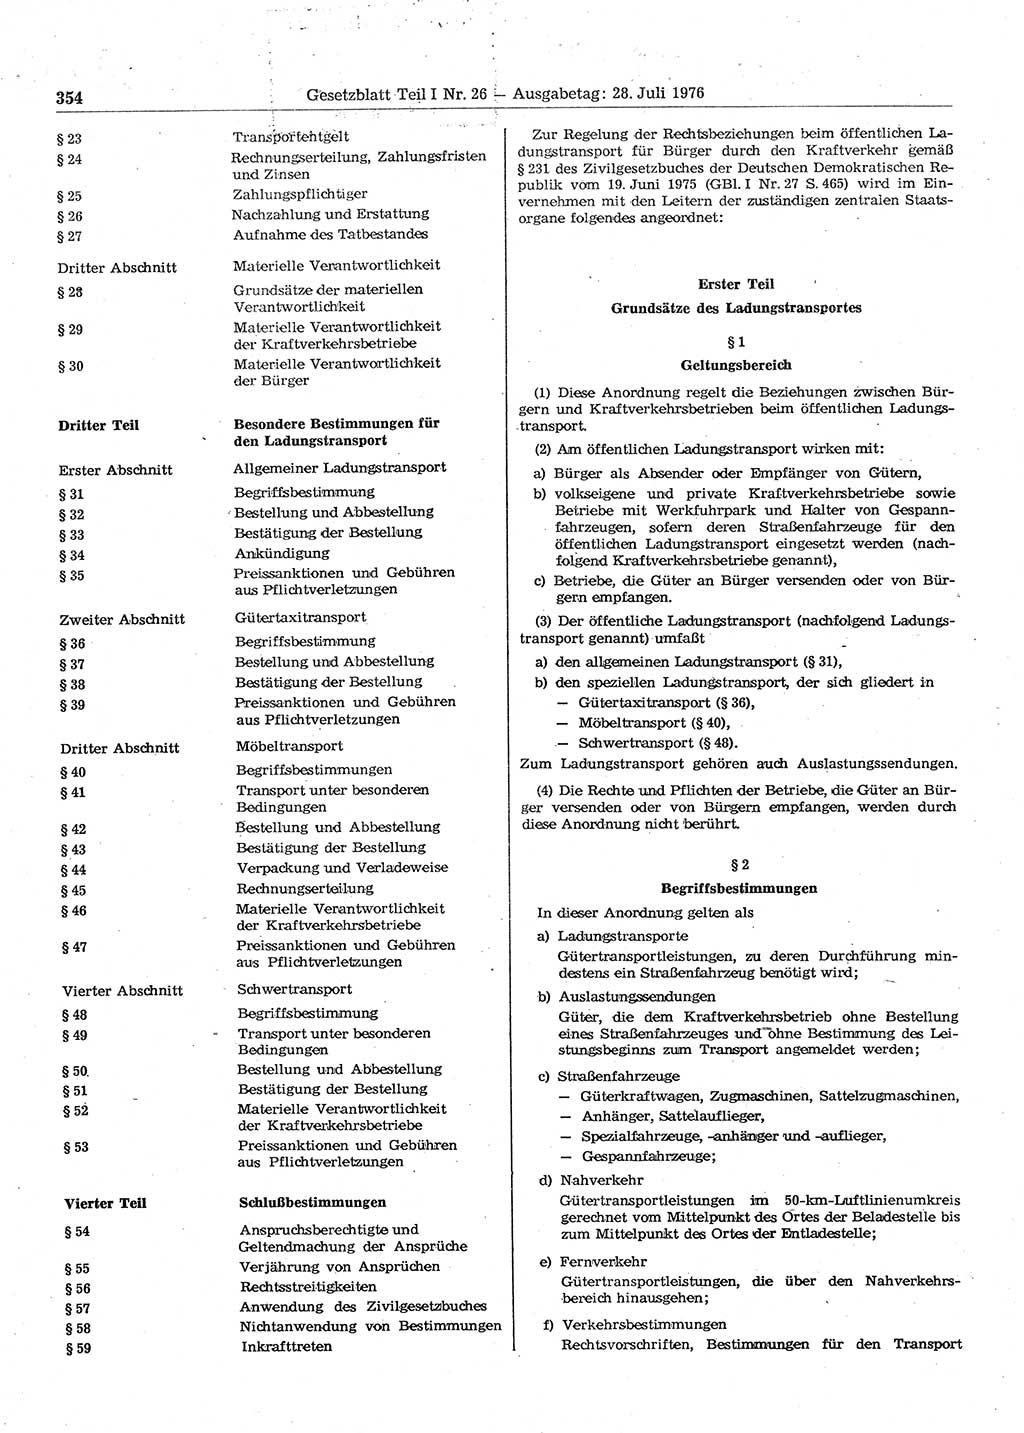 Gesetzblatt (GBl.) der Deutschen Demokratischen Republik (DDR) Teil Ⅰ 1976, Seite 354 (GBl. DDR Ⅰ 1976, S. 354)